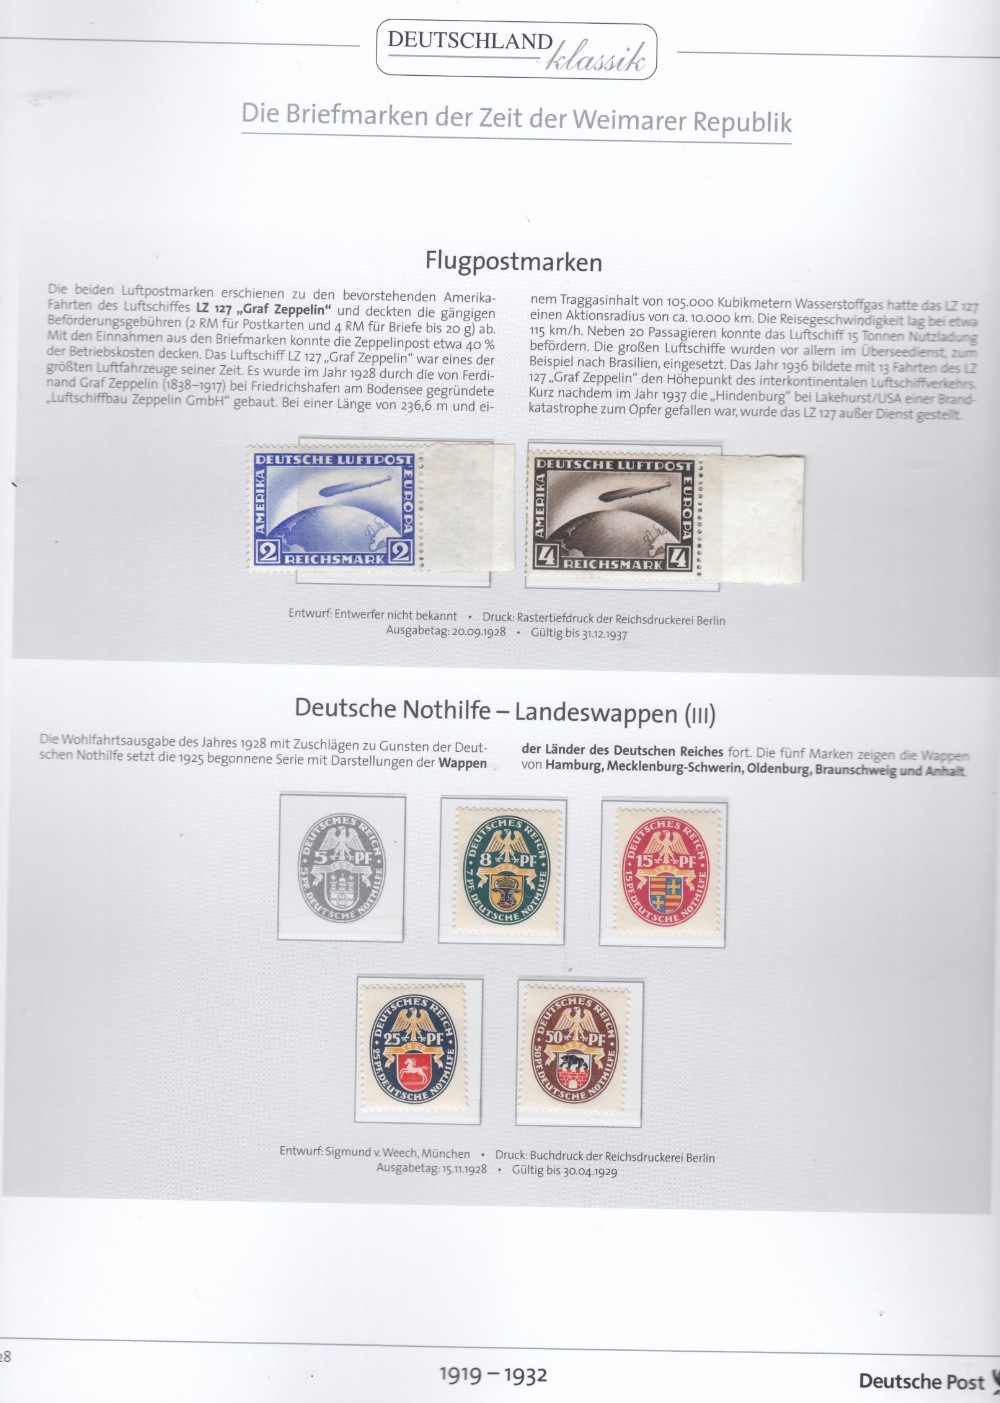 DEUTSCHES REICH WEIMARER REPUBLIK 1919-1932 ALBUM - Image 3 of 5